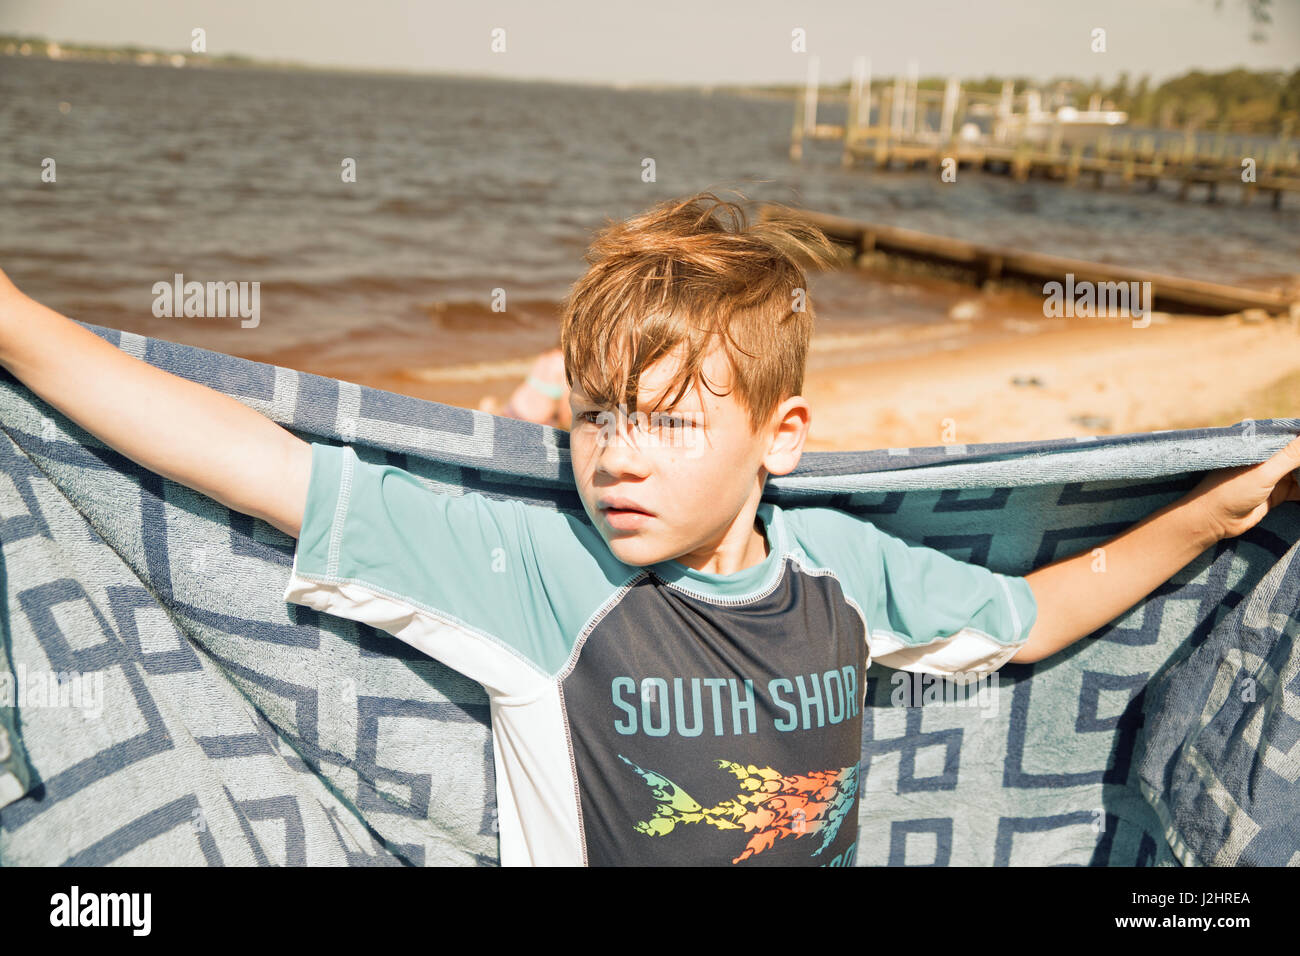 Junge, im Schwimmen Kleidung, Arme weit geöffnet, Strandtuch durchhalten gegen Wasser und dock-Hintergrund. Stockfoto